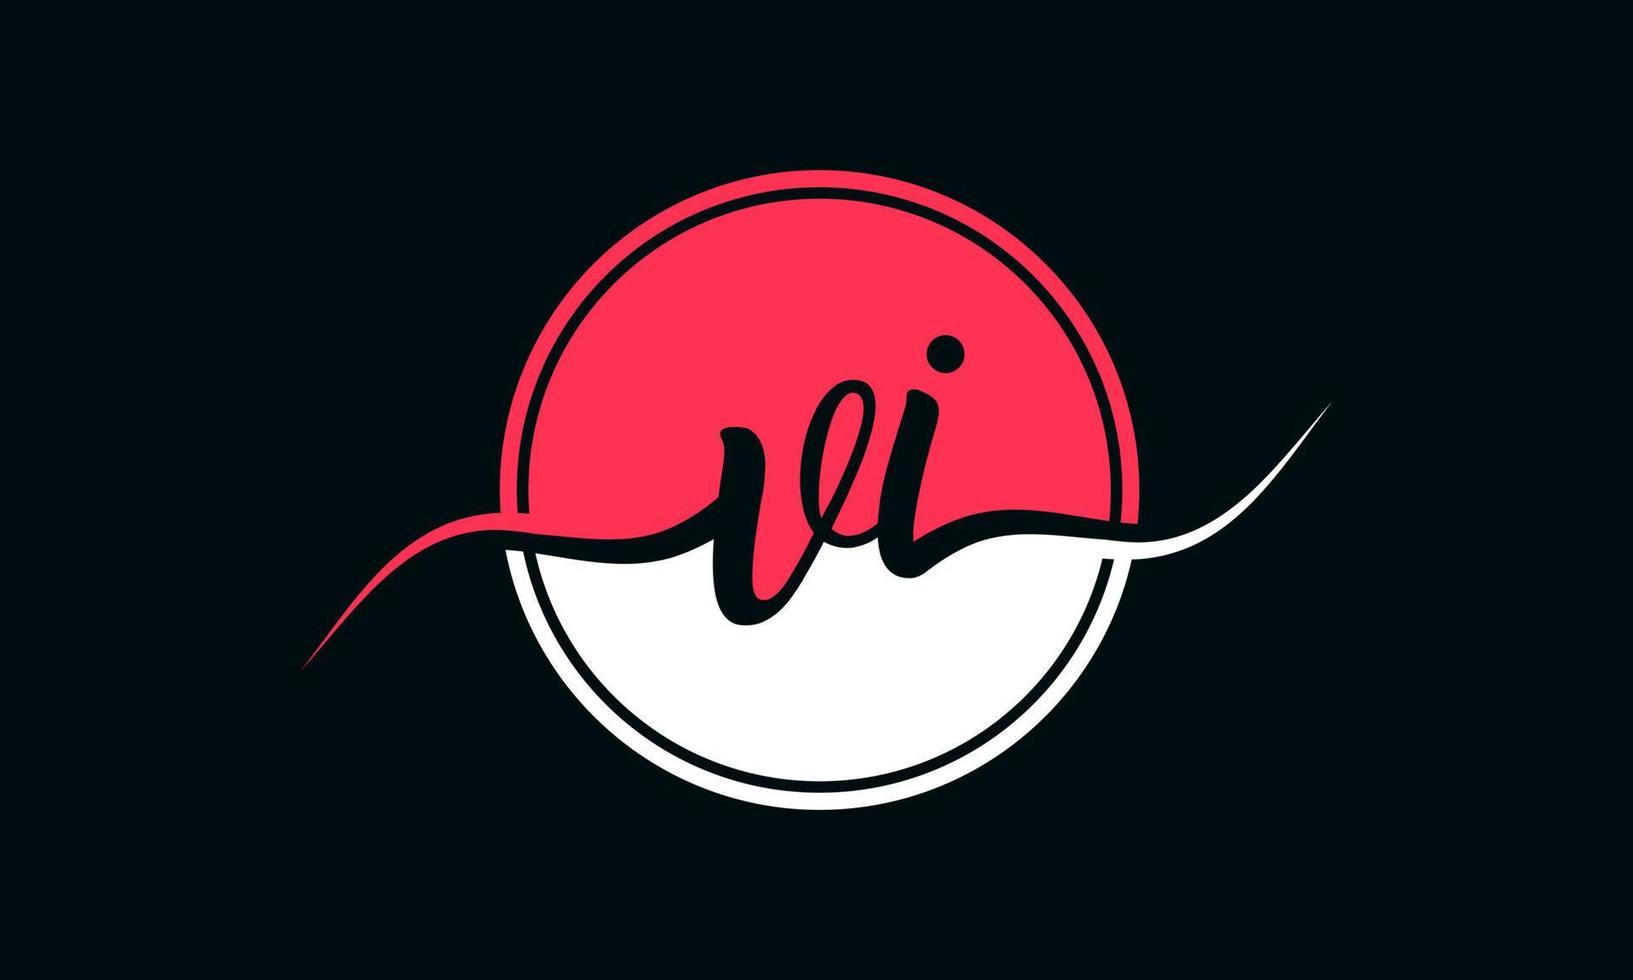 logo initial de la lettre vi avec cercle intérieur de couleur blanche et rose. vecteur professionnel.